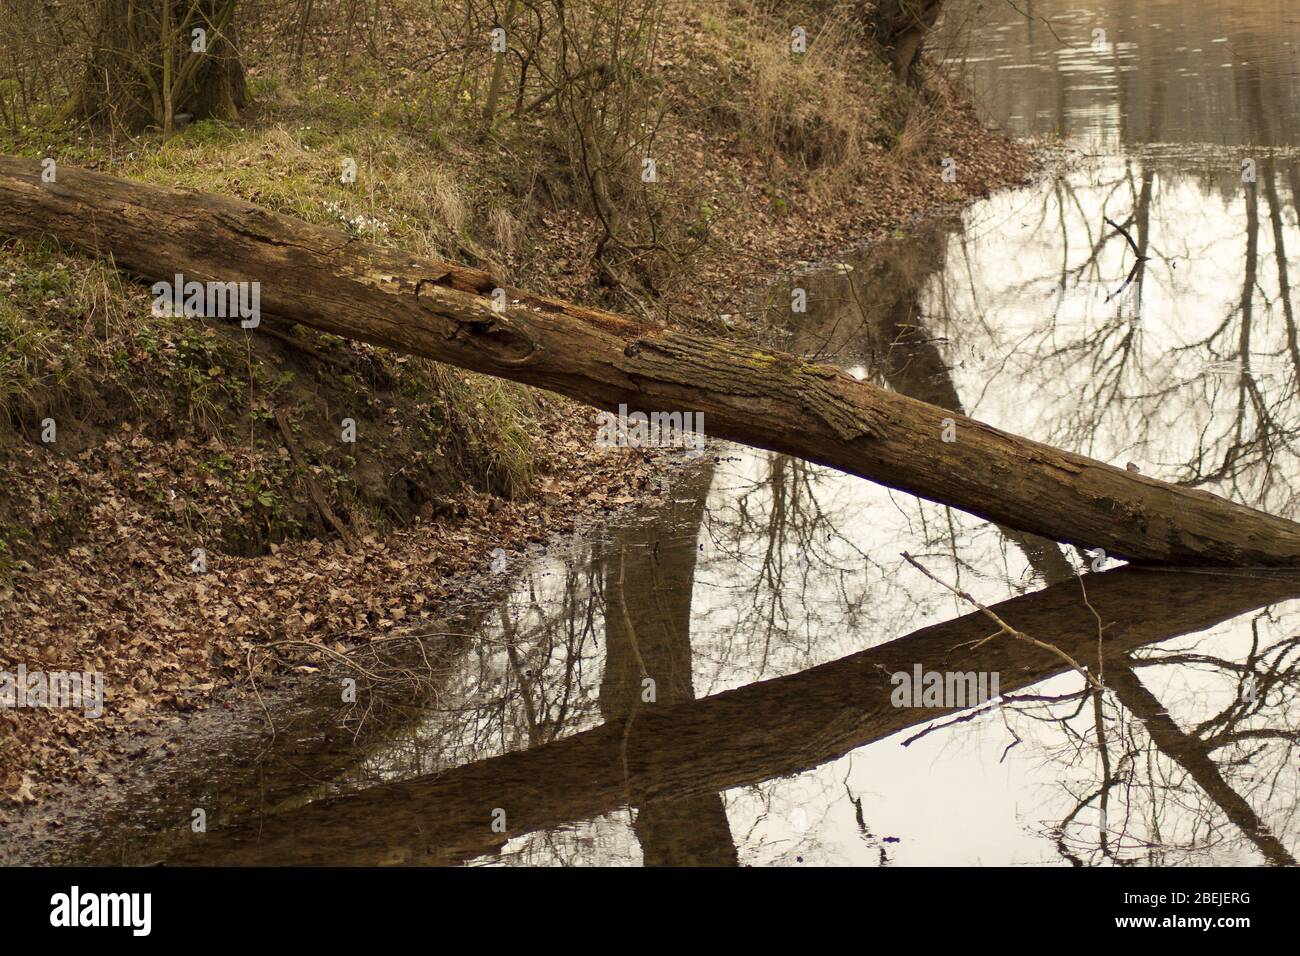 Tronc d'arbre cassé allongé dans l'eau. Banque D'Images